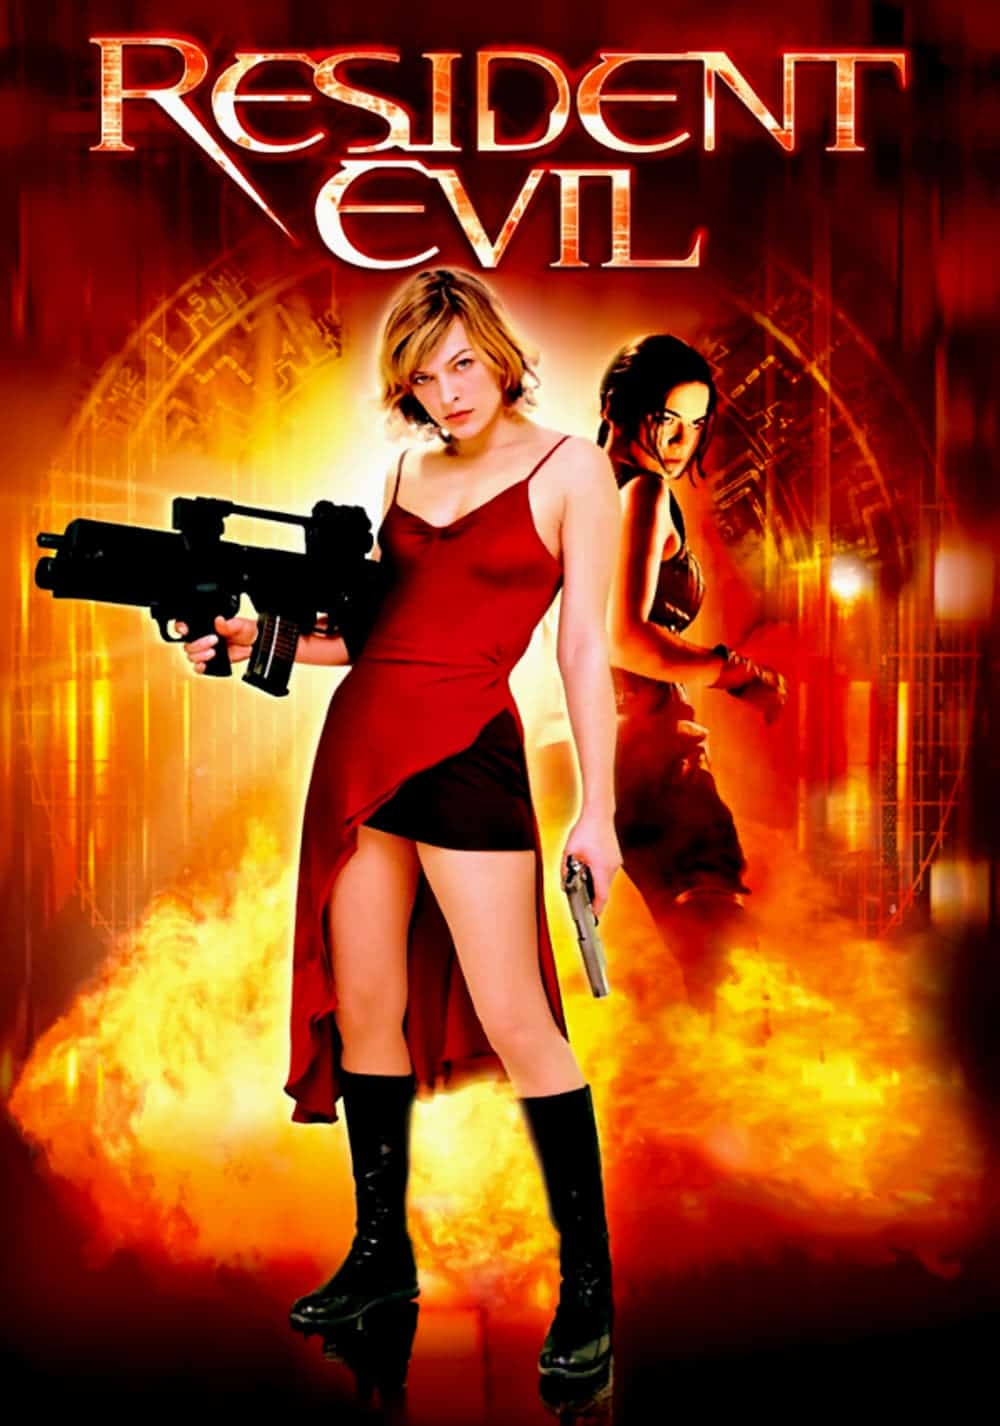 Resident Evil, 2002 